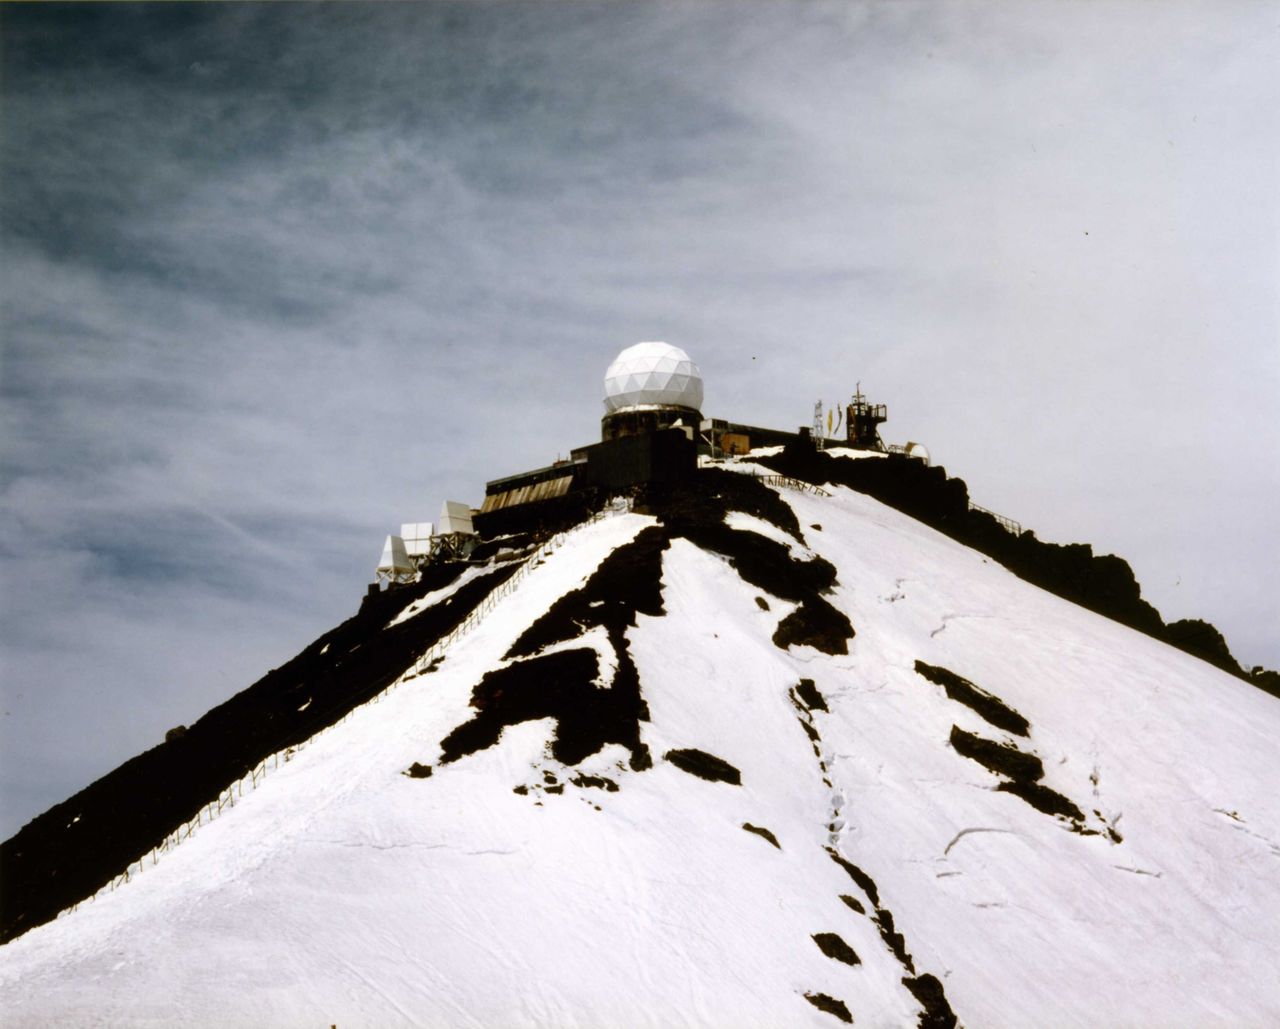 Le dôme du radar avant sa démolition en 2001. L’édifice reconstruit est aujourd’hui exposé au Musée du dôme du radar du Mont Juji, à Fujiyoshida, préfecture de Yamanashi. (Photo d’Iwazaki Hiroshi, chef de l’équipe de la Station de recherche du mont Fuji, la SRMF)